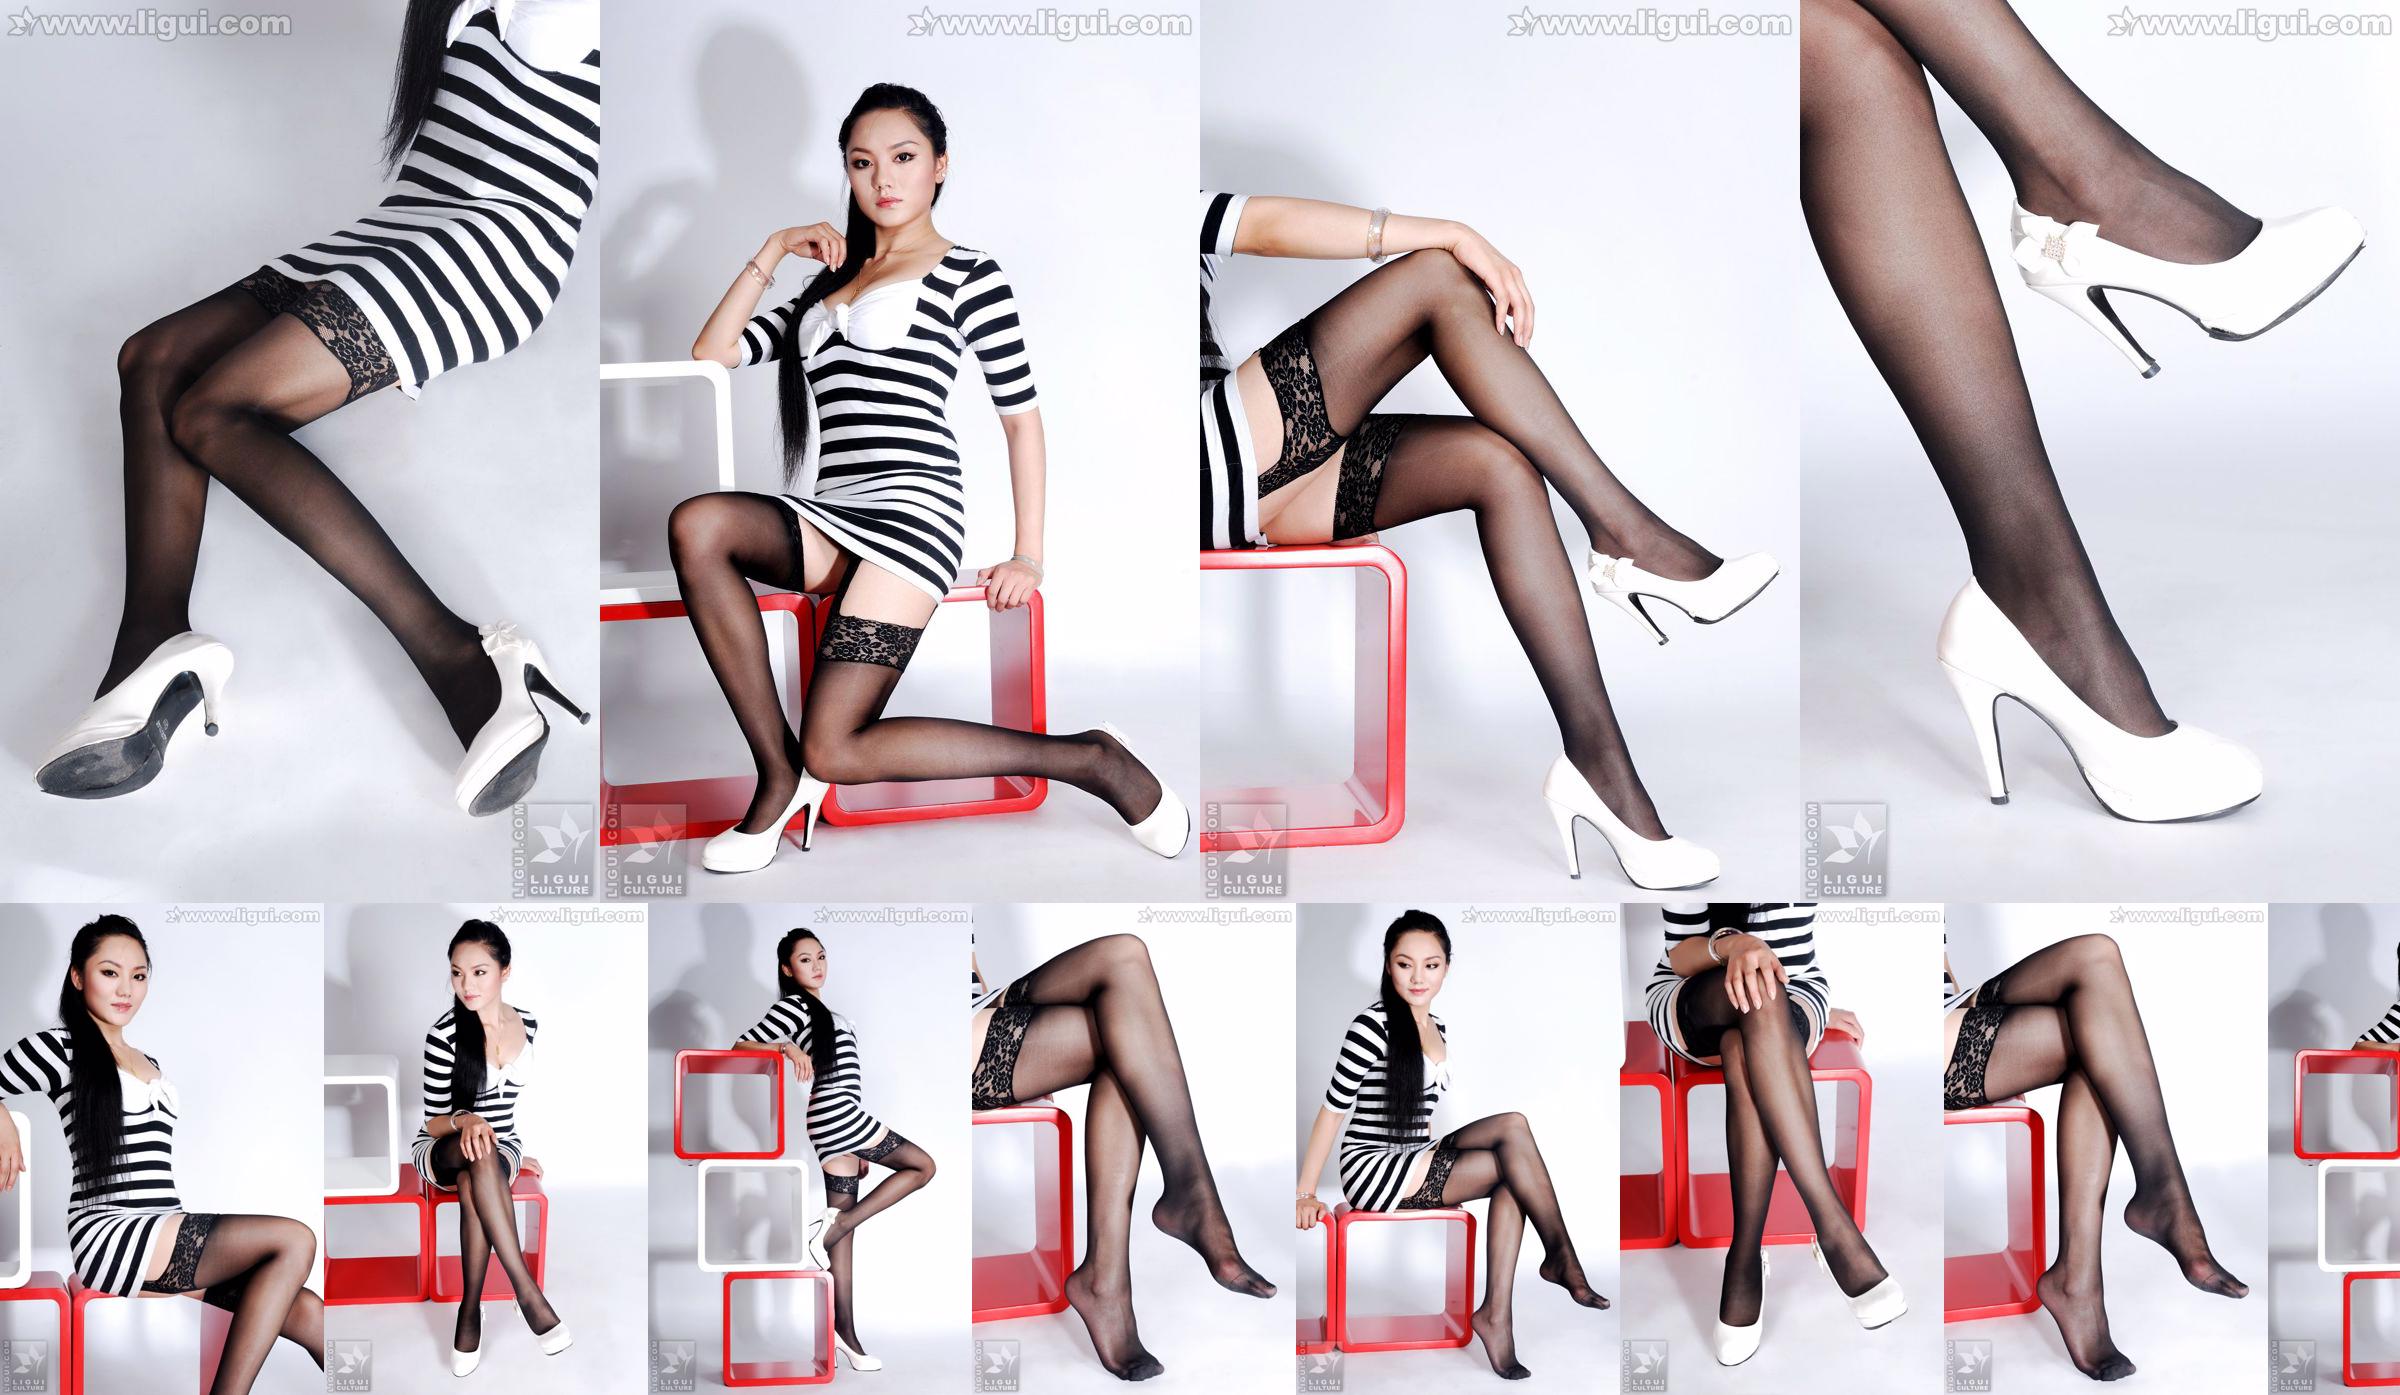 นางแบบ Yang Zi "The Charm of Stockings in Simple Home Decoration" [丽柜 LiGui] รูปถ่ายขาสวยและเท้าหยก No.81c2a8 หน้า 19